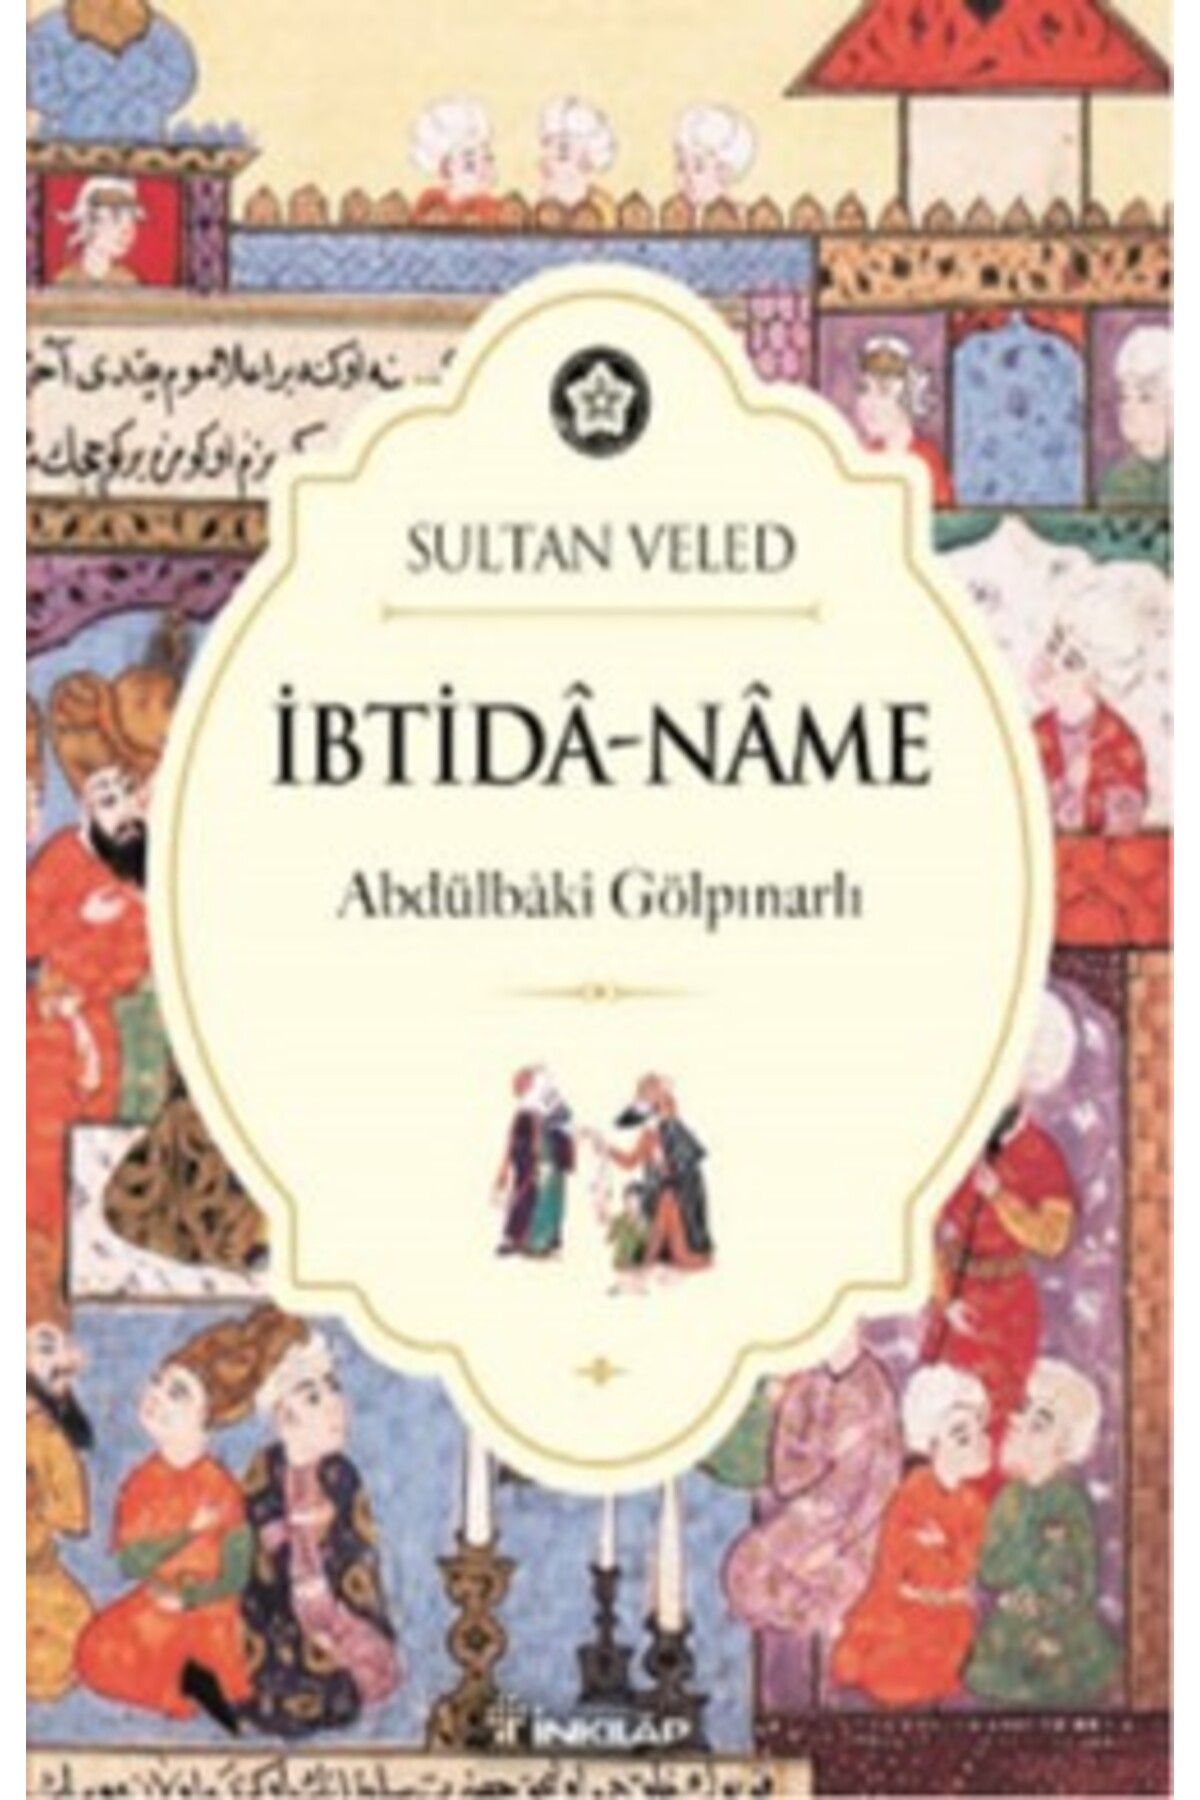 İnkılap Kitabevi İbtida-Name kitabı - Sultan Veled - İnkılap Kitabevi